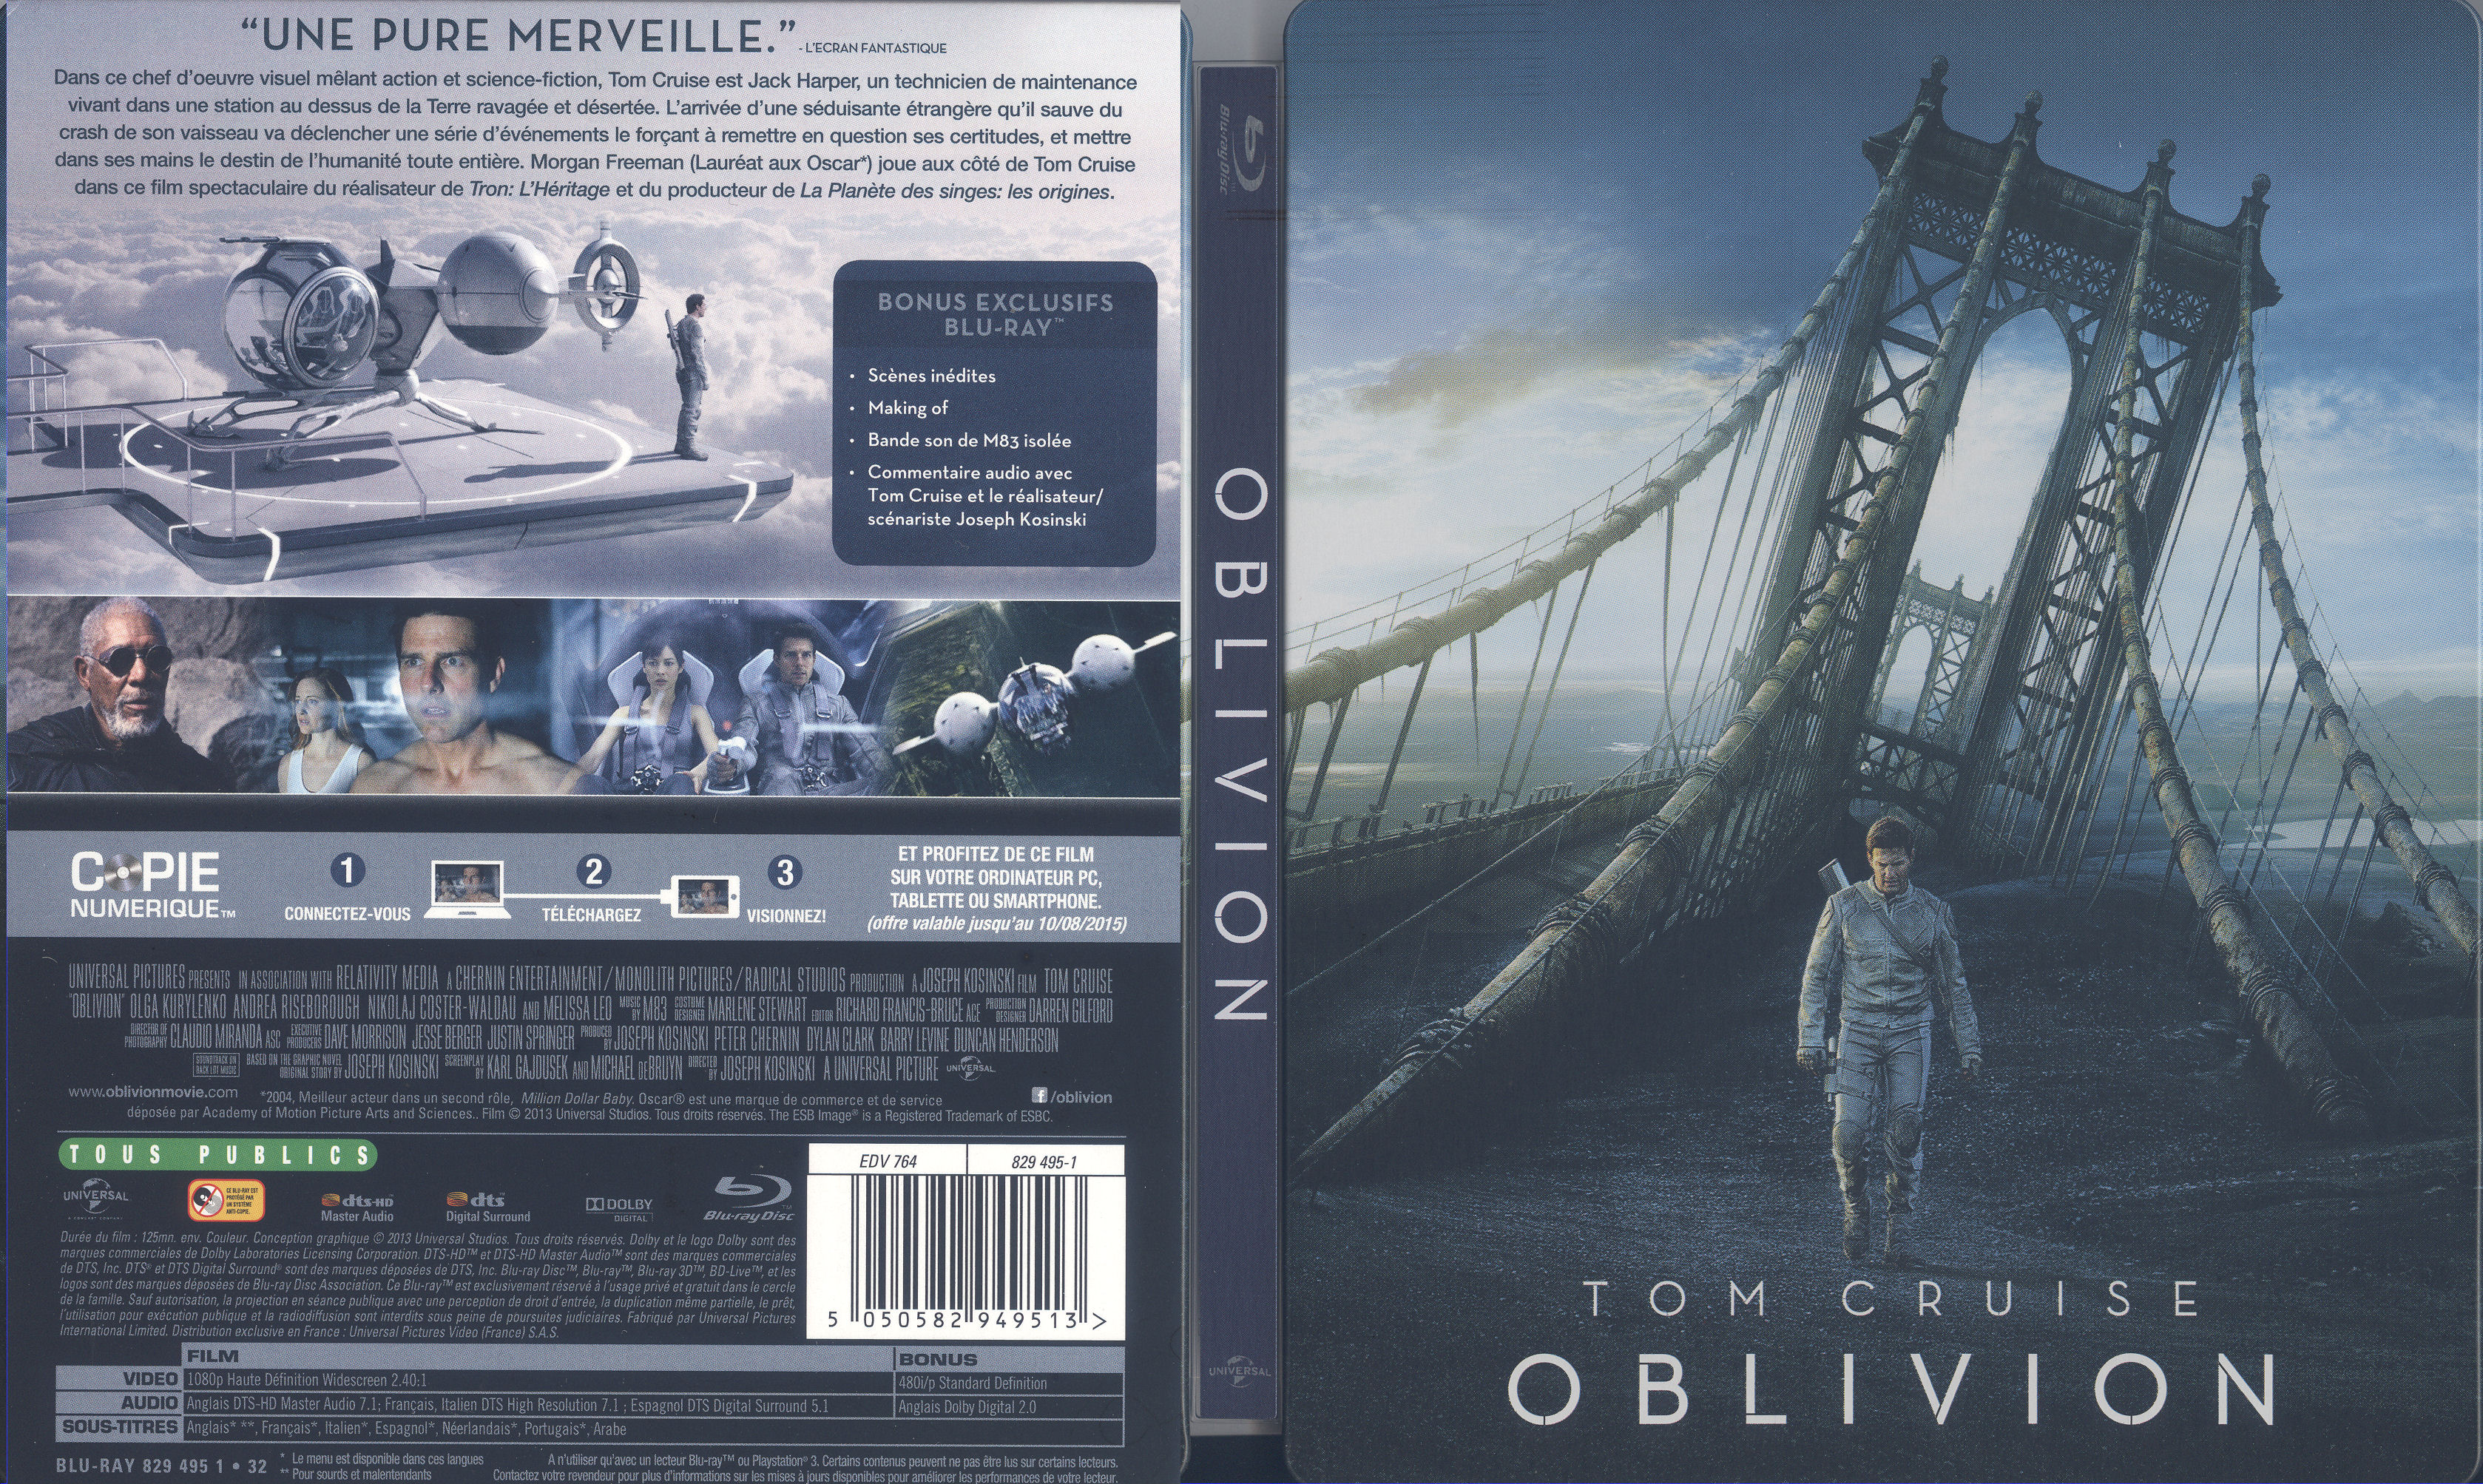 Jaquette DVD Oblivion (BLU-RAY) v2